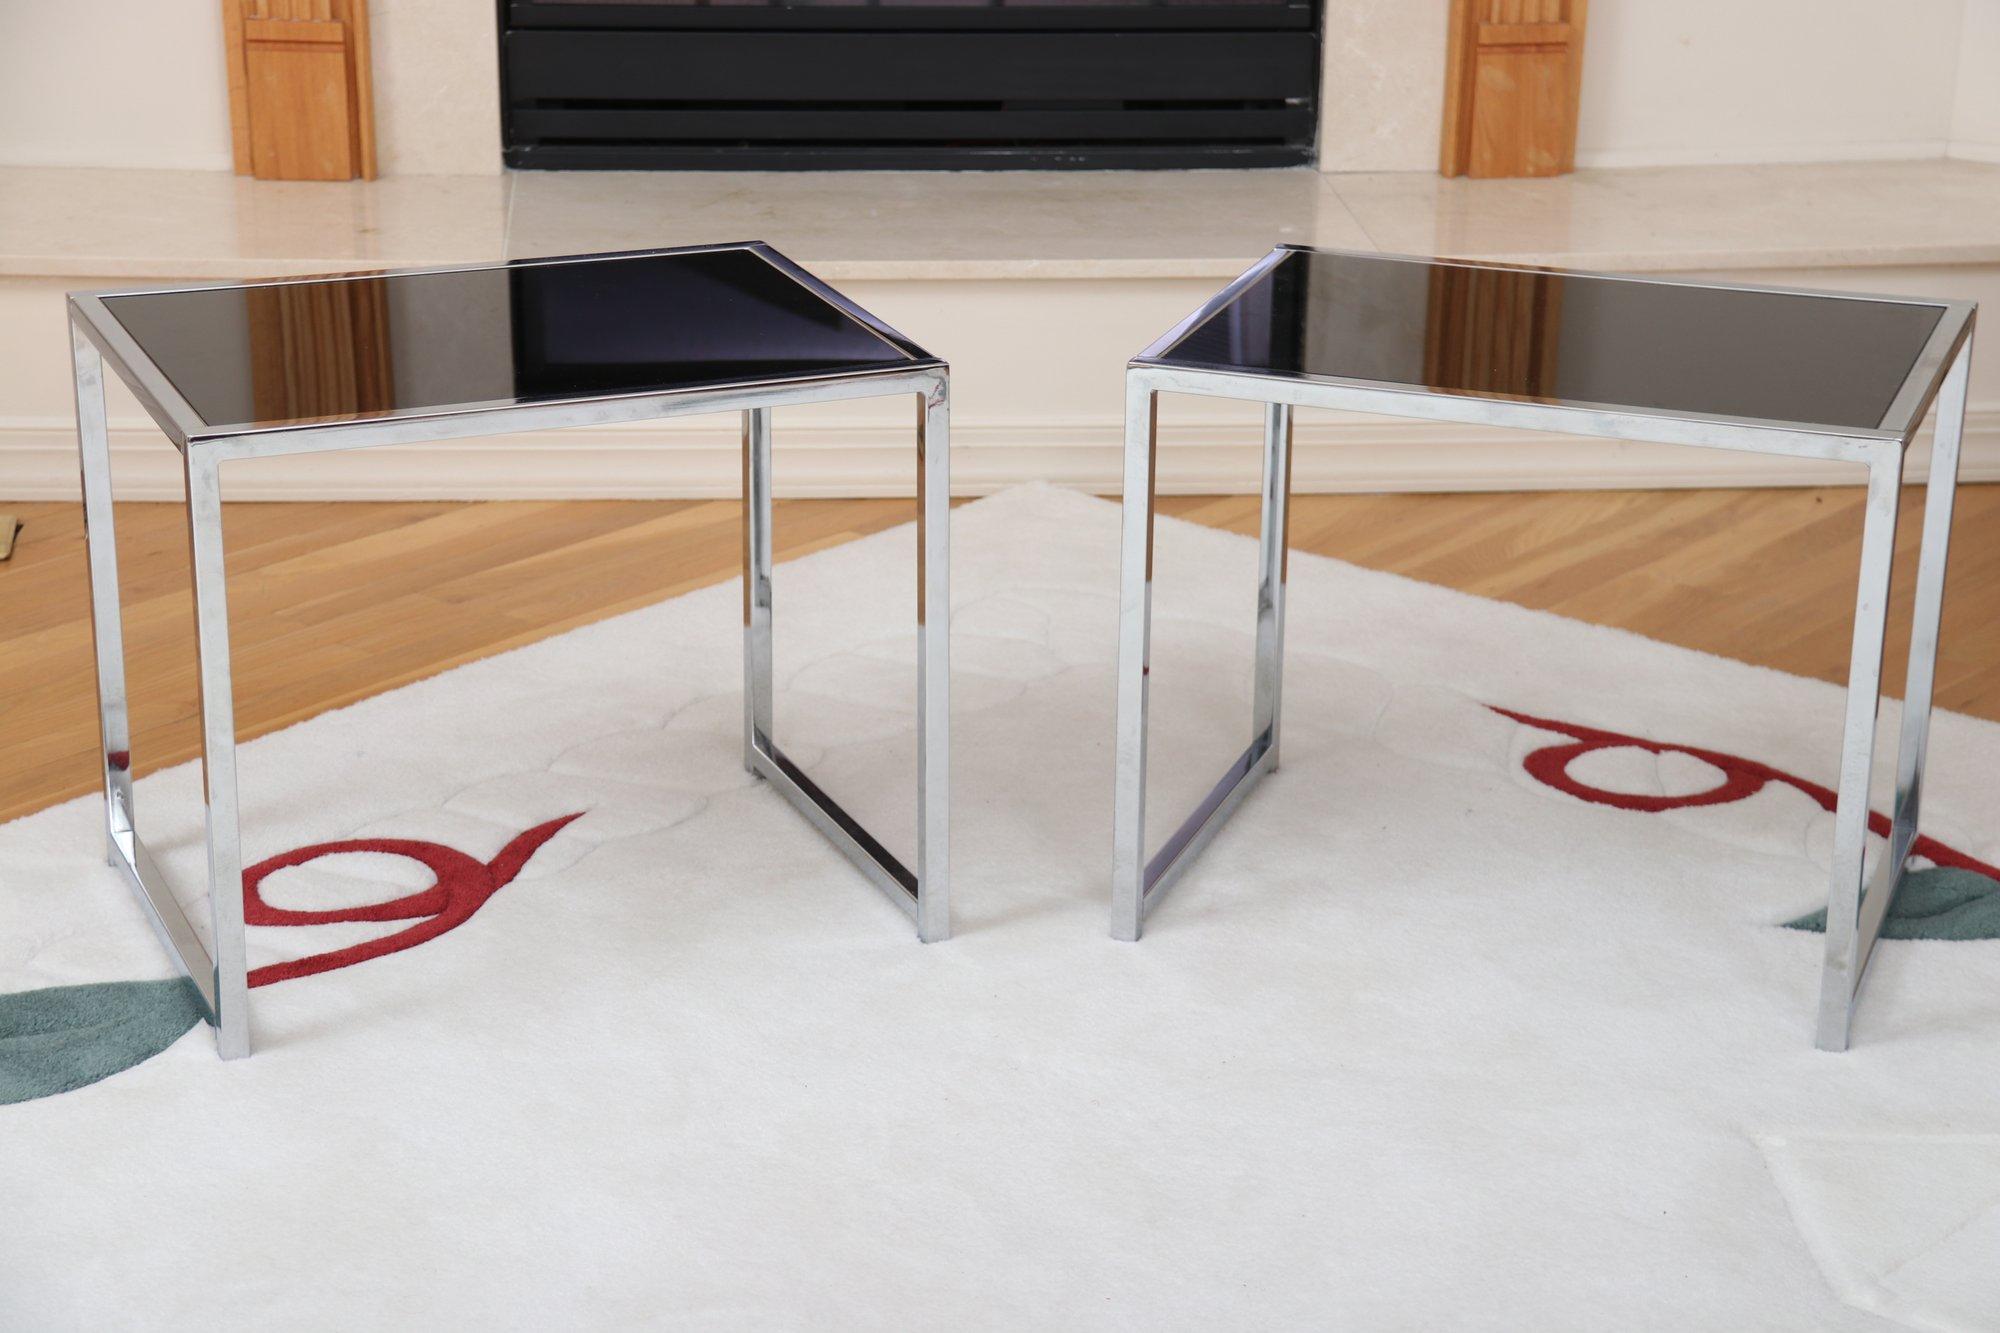 Table d'appoint post-moderne élégante en chrome et verre noir. Un design minimaliste qui a du punch. Verre amovible noir niché dans un cadre tubulaire linéaire chromé. 